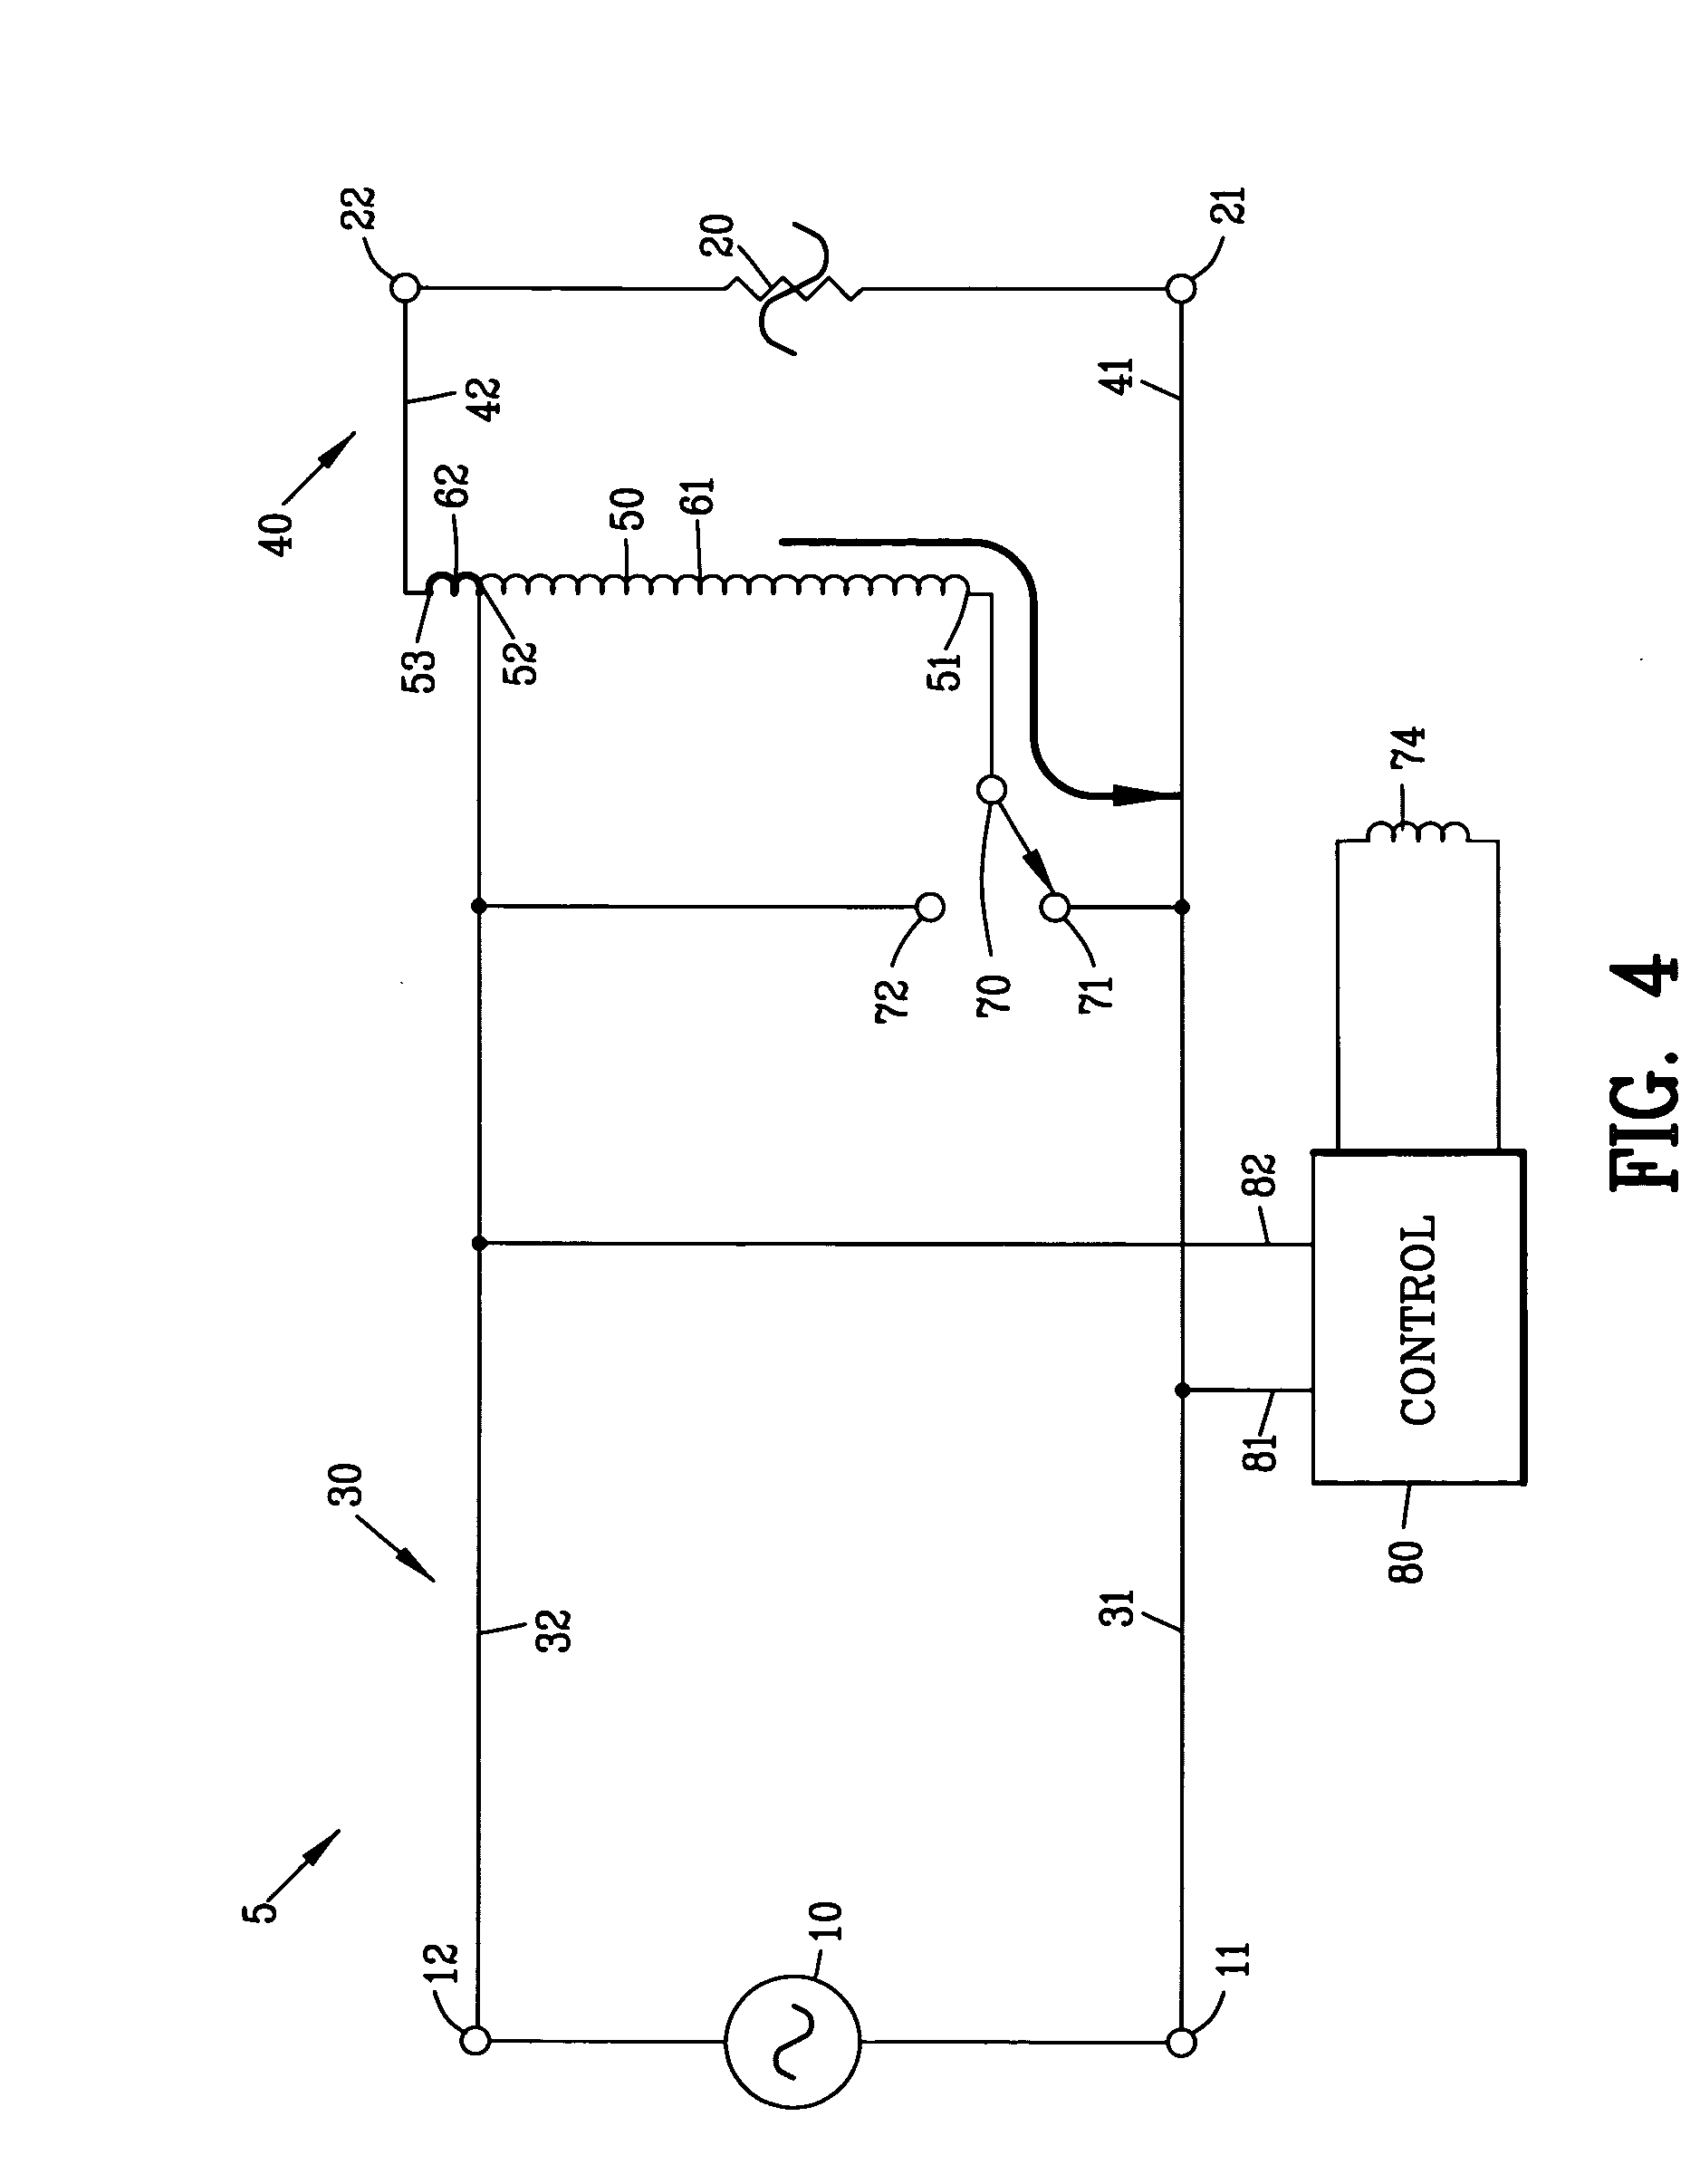 Voltage compensation circuit